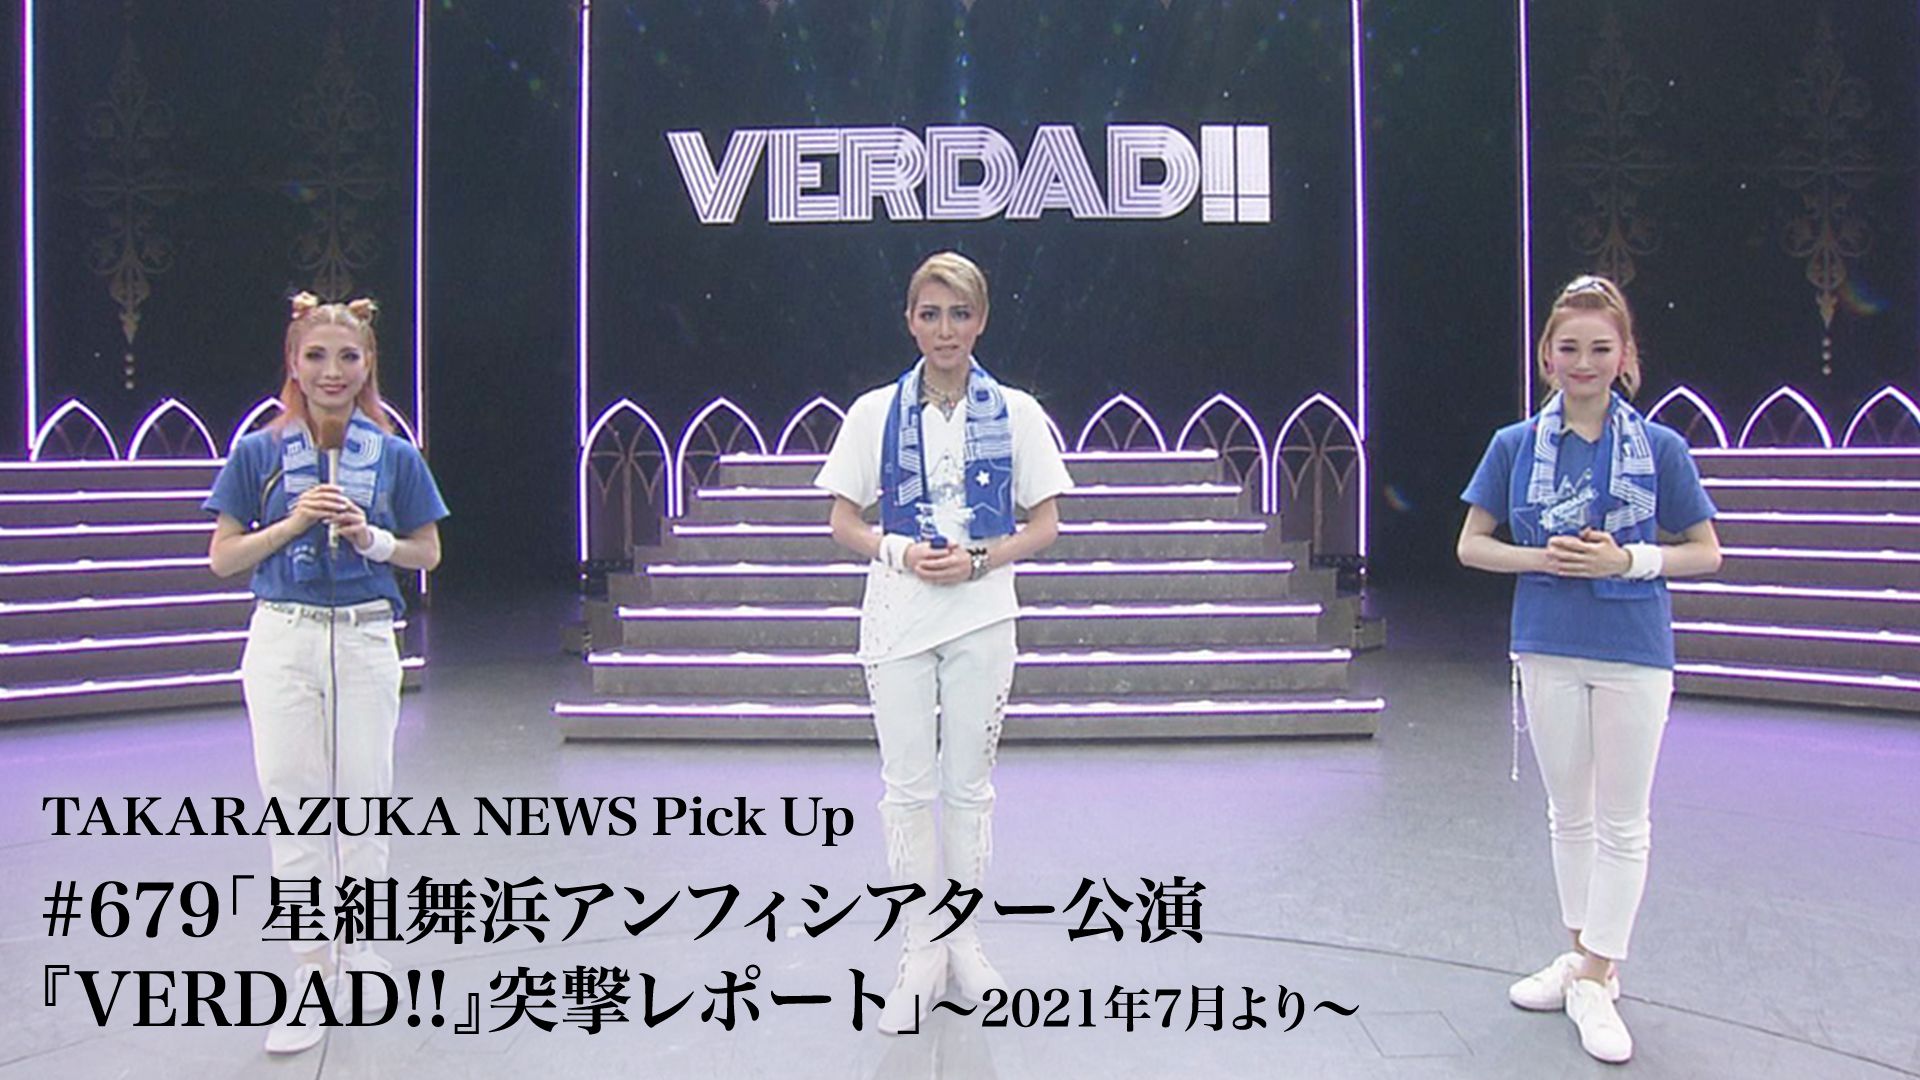 TAKARAZUKA NEWS Pick Up #679「星組舞浜アンフィシアター公演『VERDAD!!』突撃レポート」